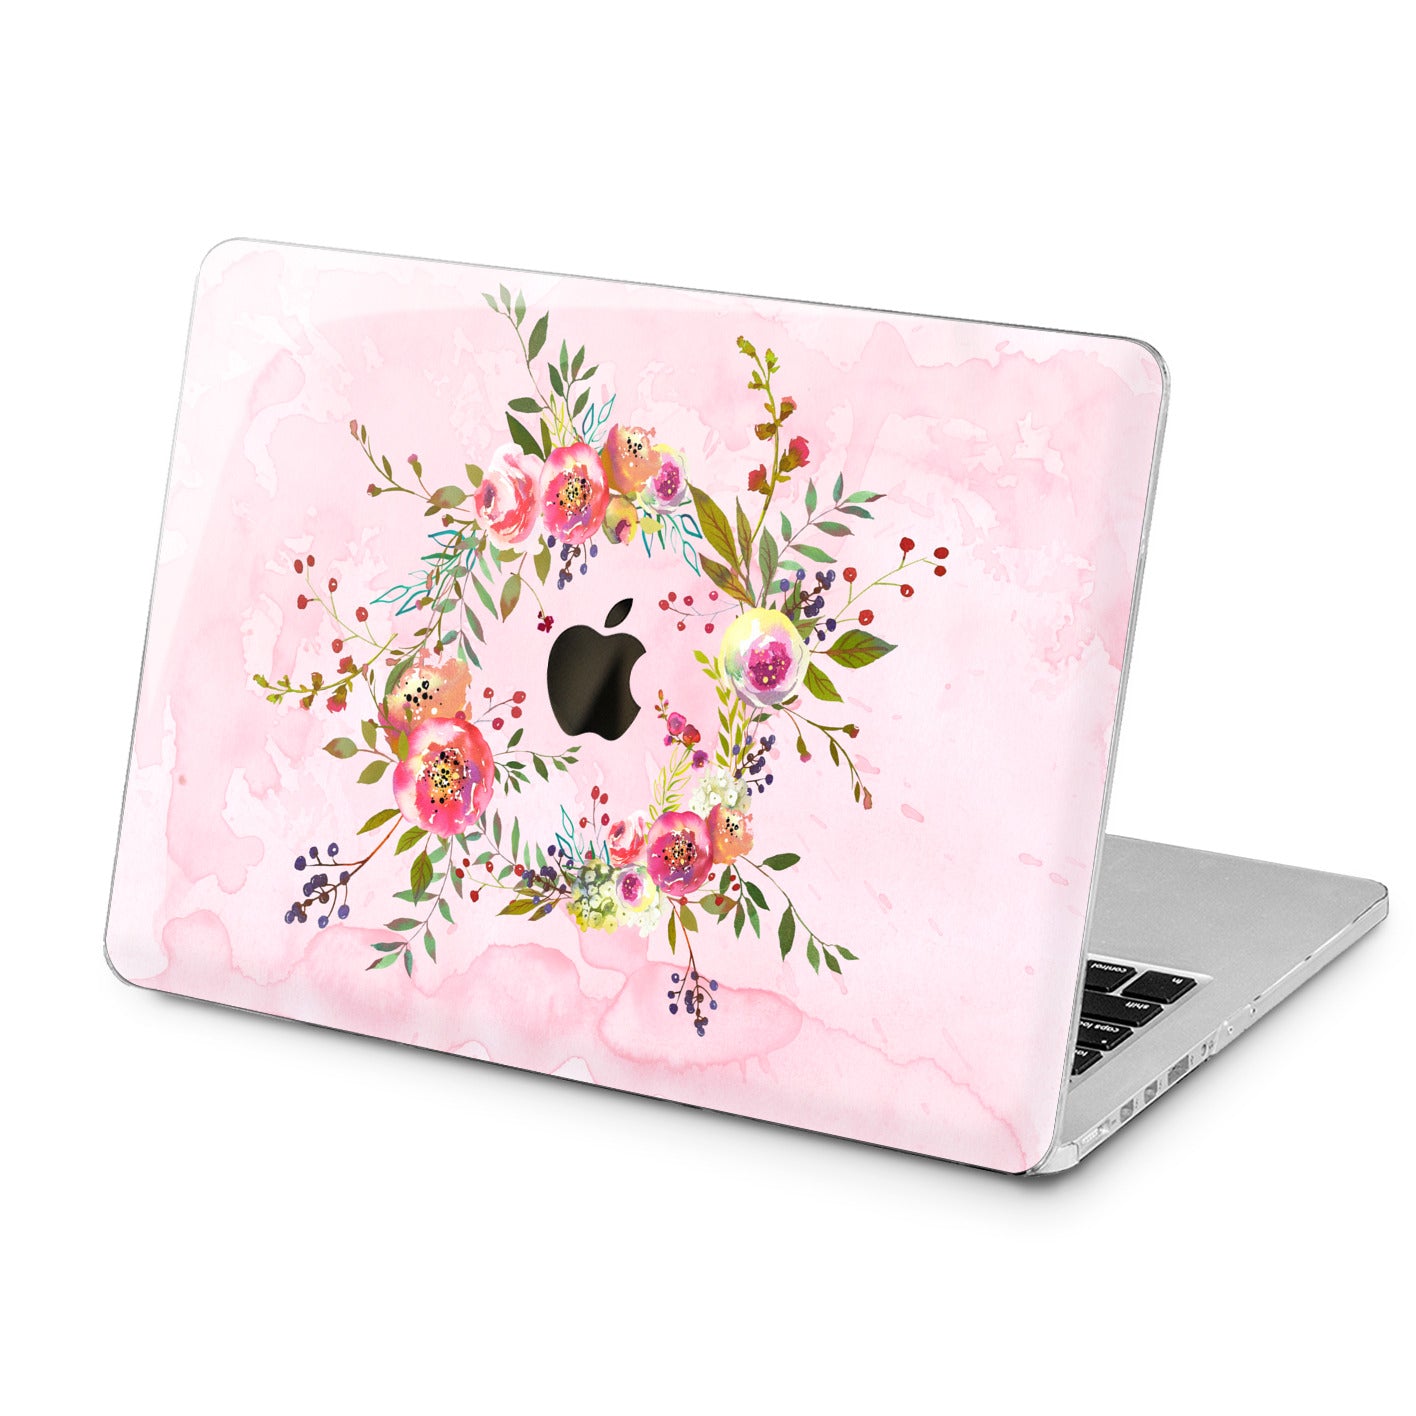 Lex Altern Lex Altern Wildflower Wreath Case for your Laptop Apple Macbook.